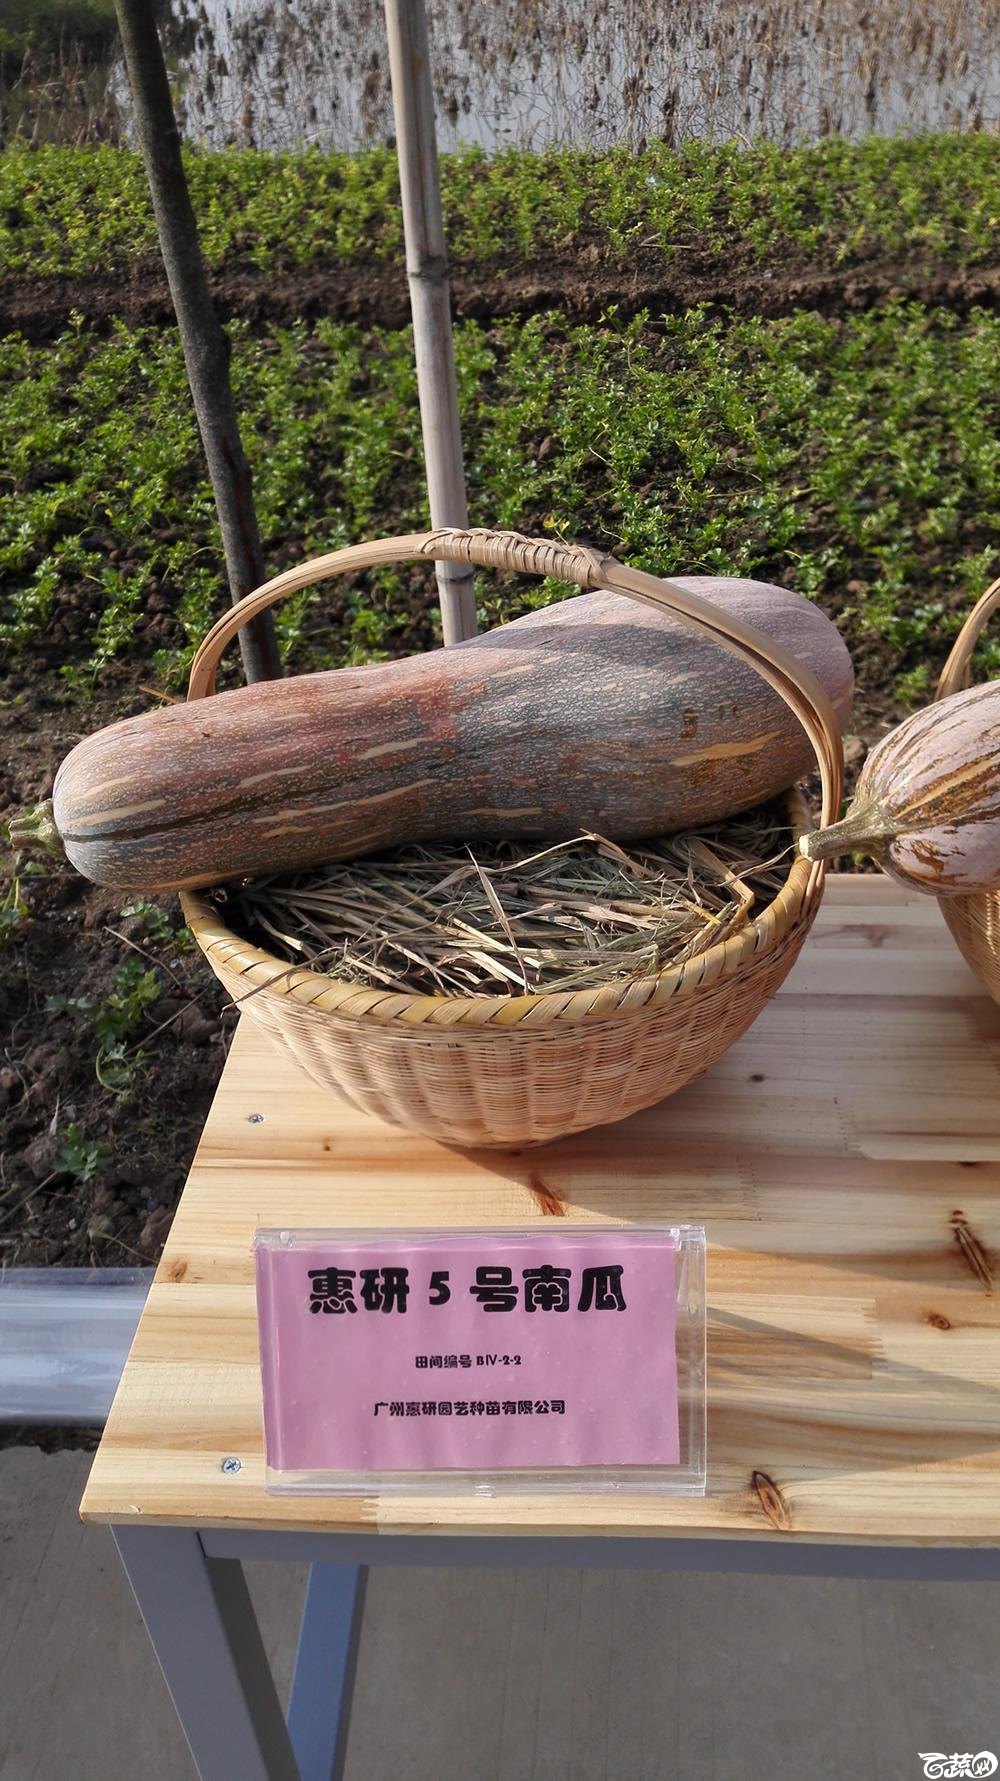 2014年12月10号广州市农科院南沙秋季蔬菜新品种展示会_瓜类_005.jpg